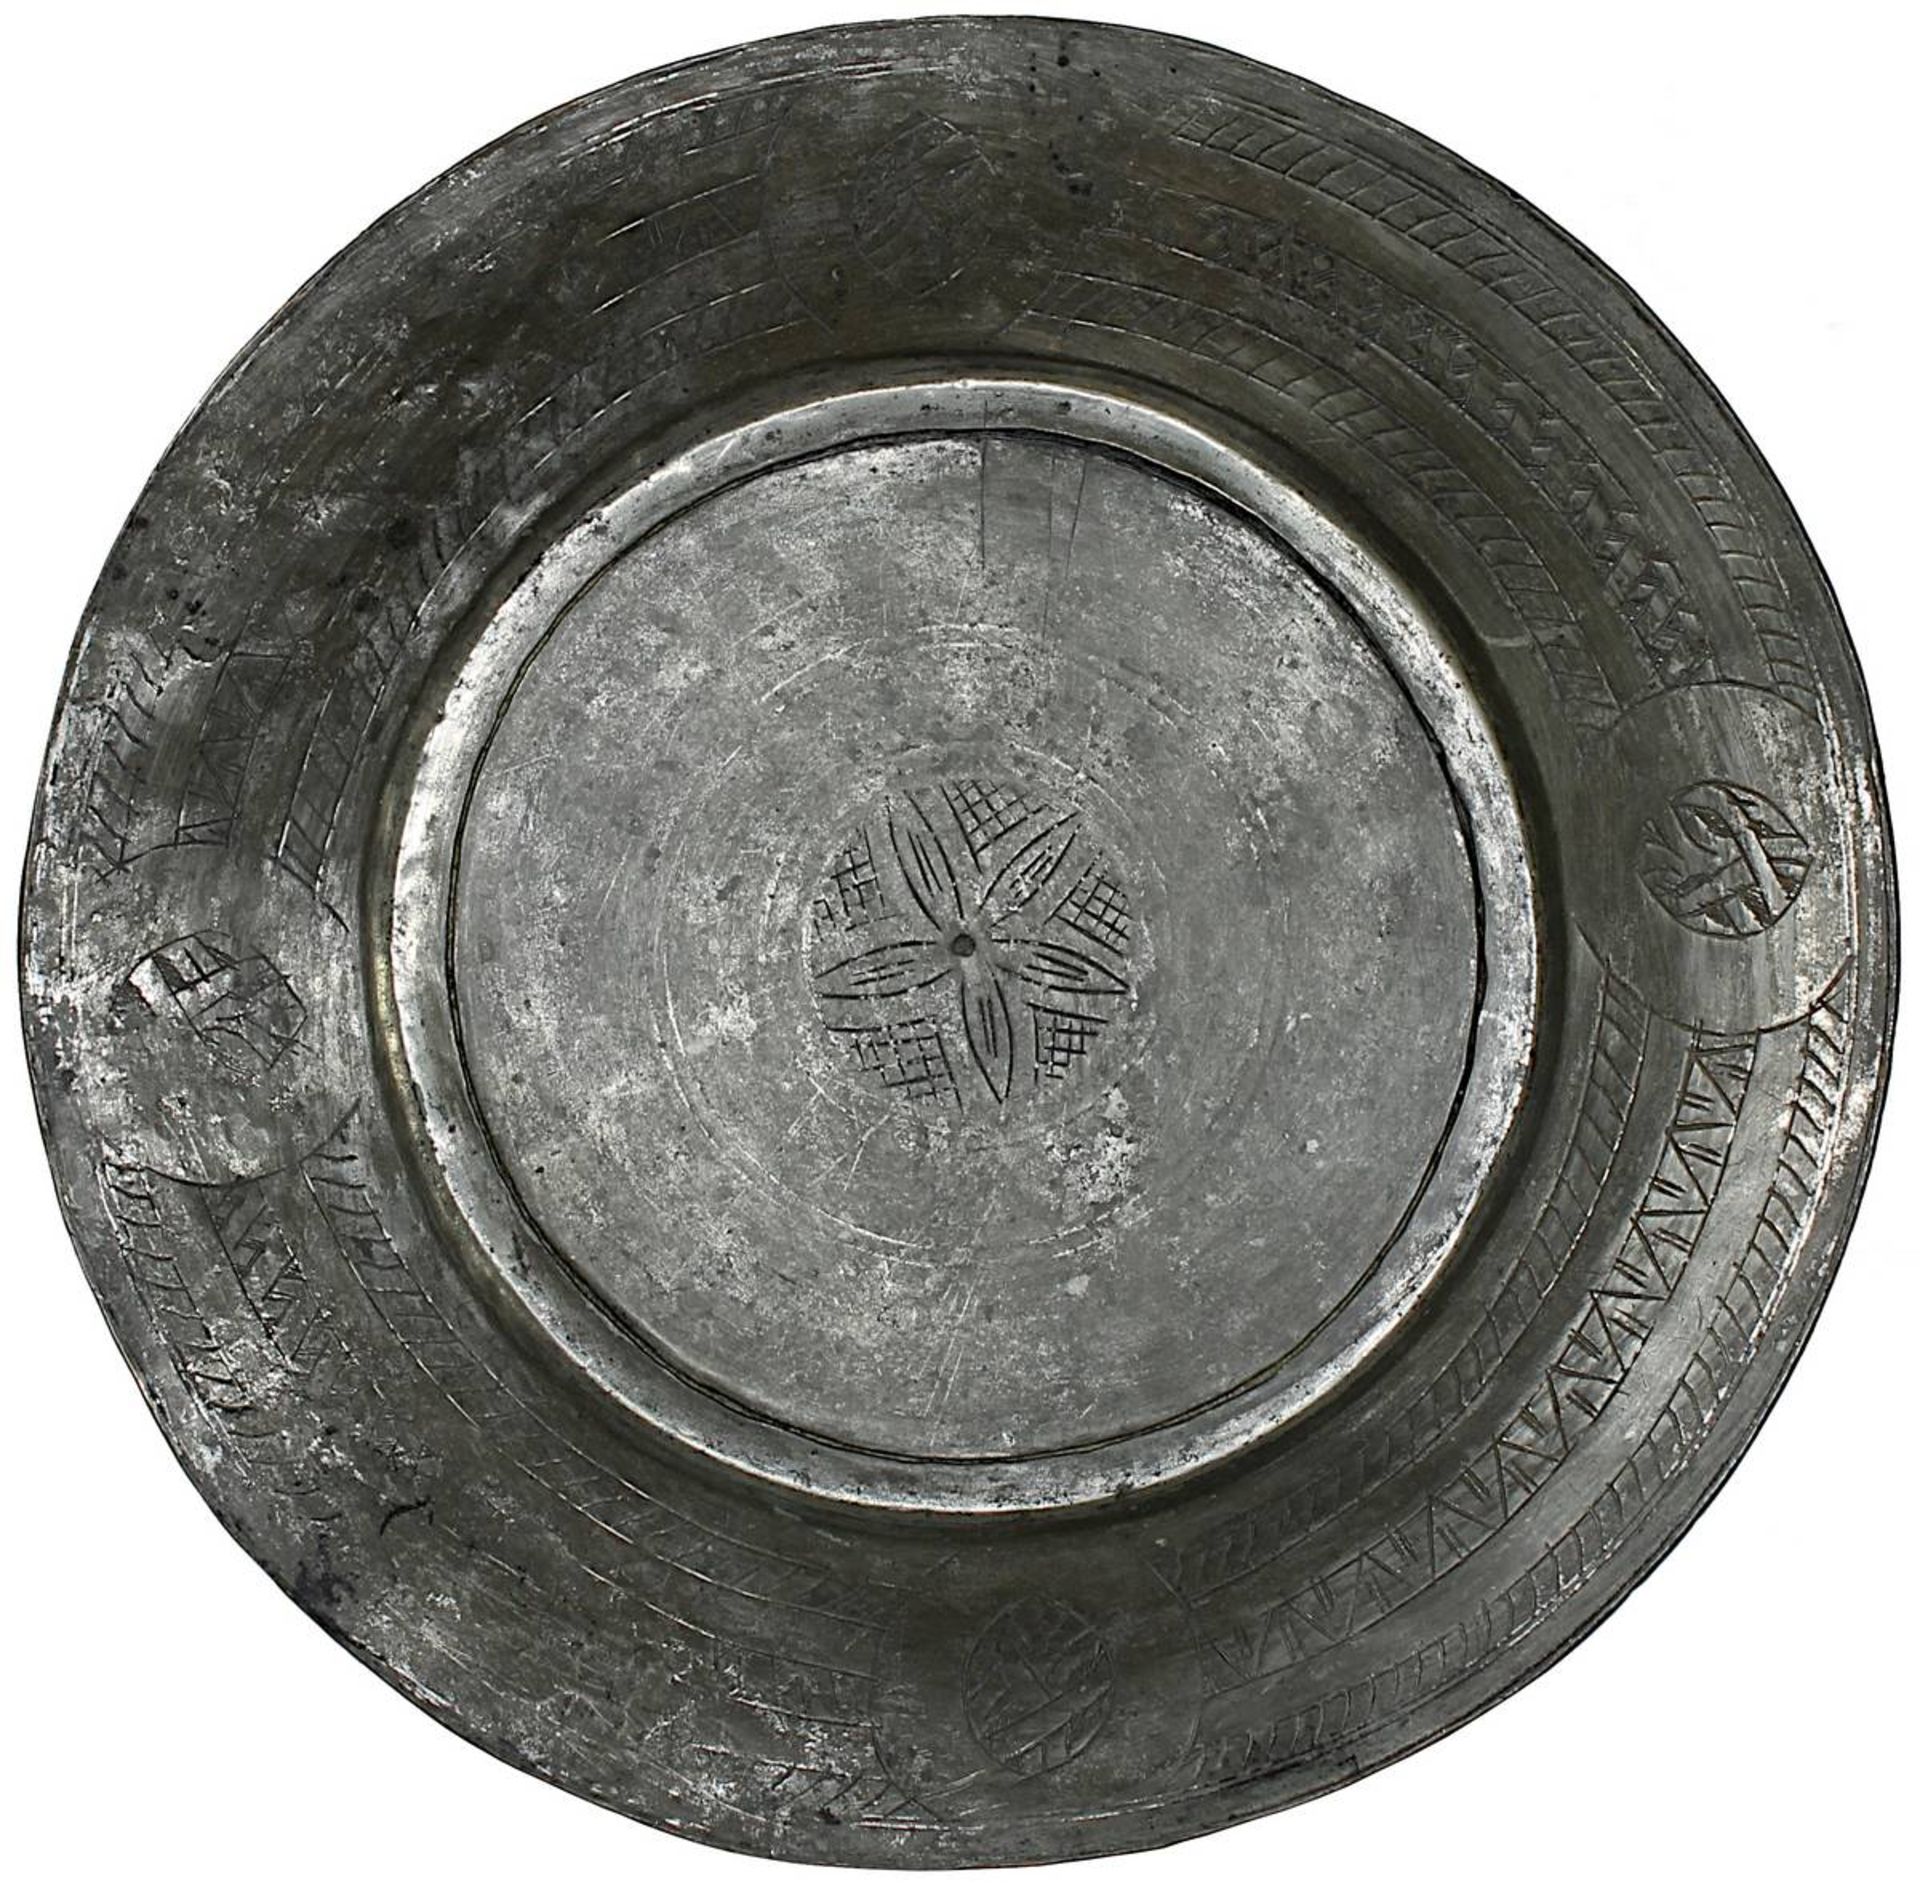 3 Servierteller aus verzinntem Kupfer, Syrien 1. H. 20. Jh., Handarbeit, reicher gravierter - Bild 4 aus 4